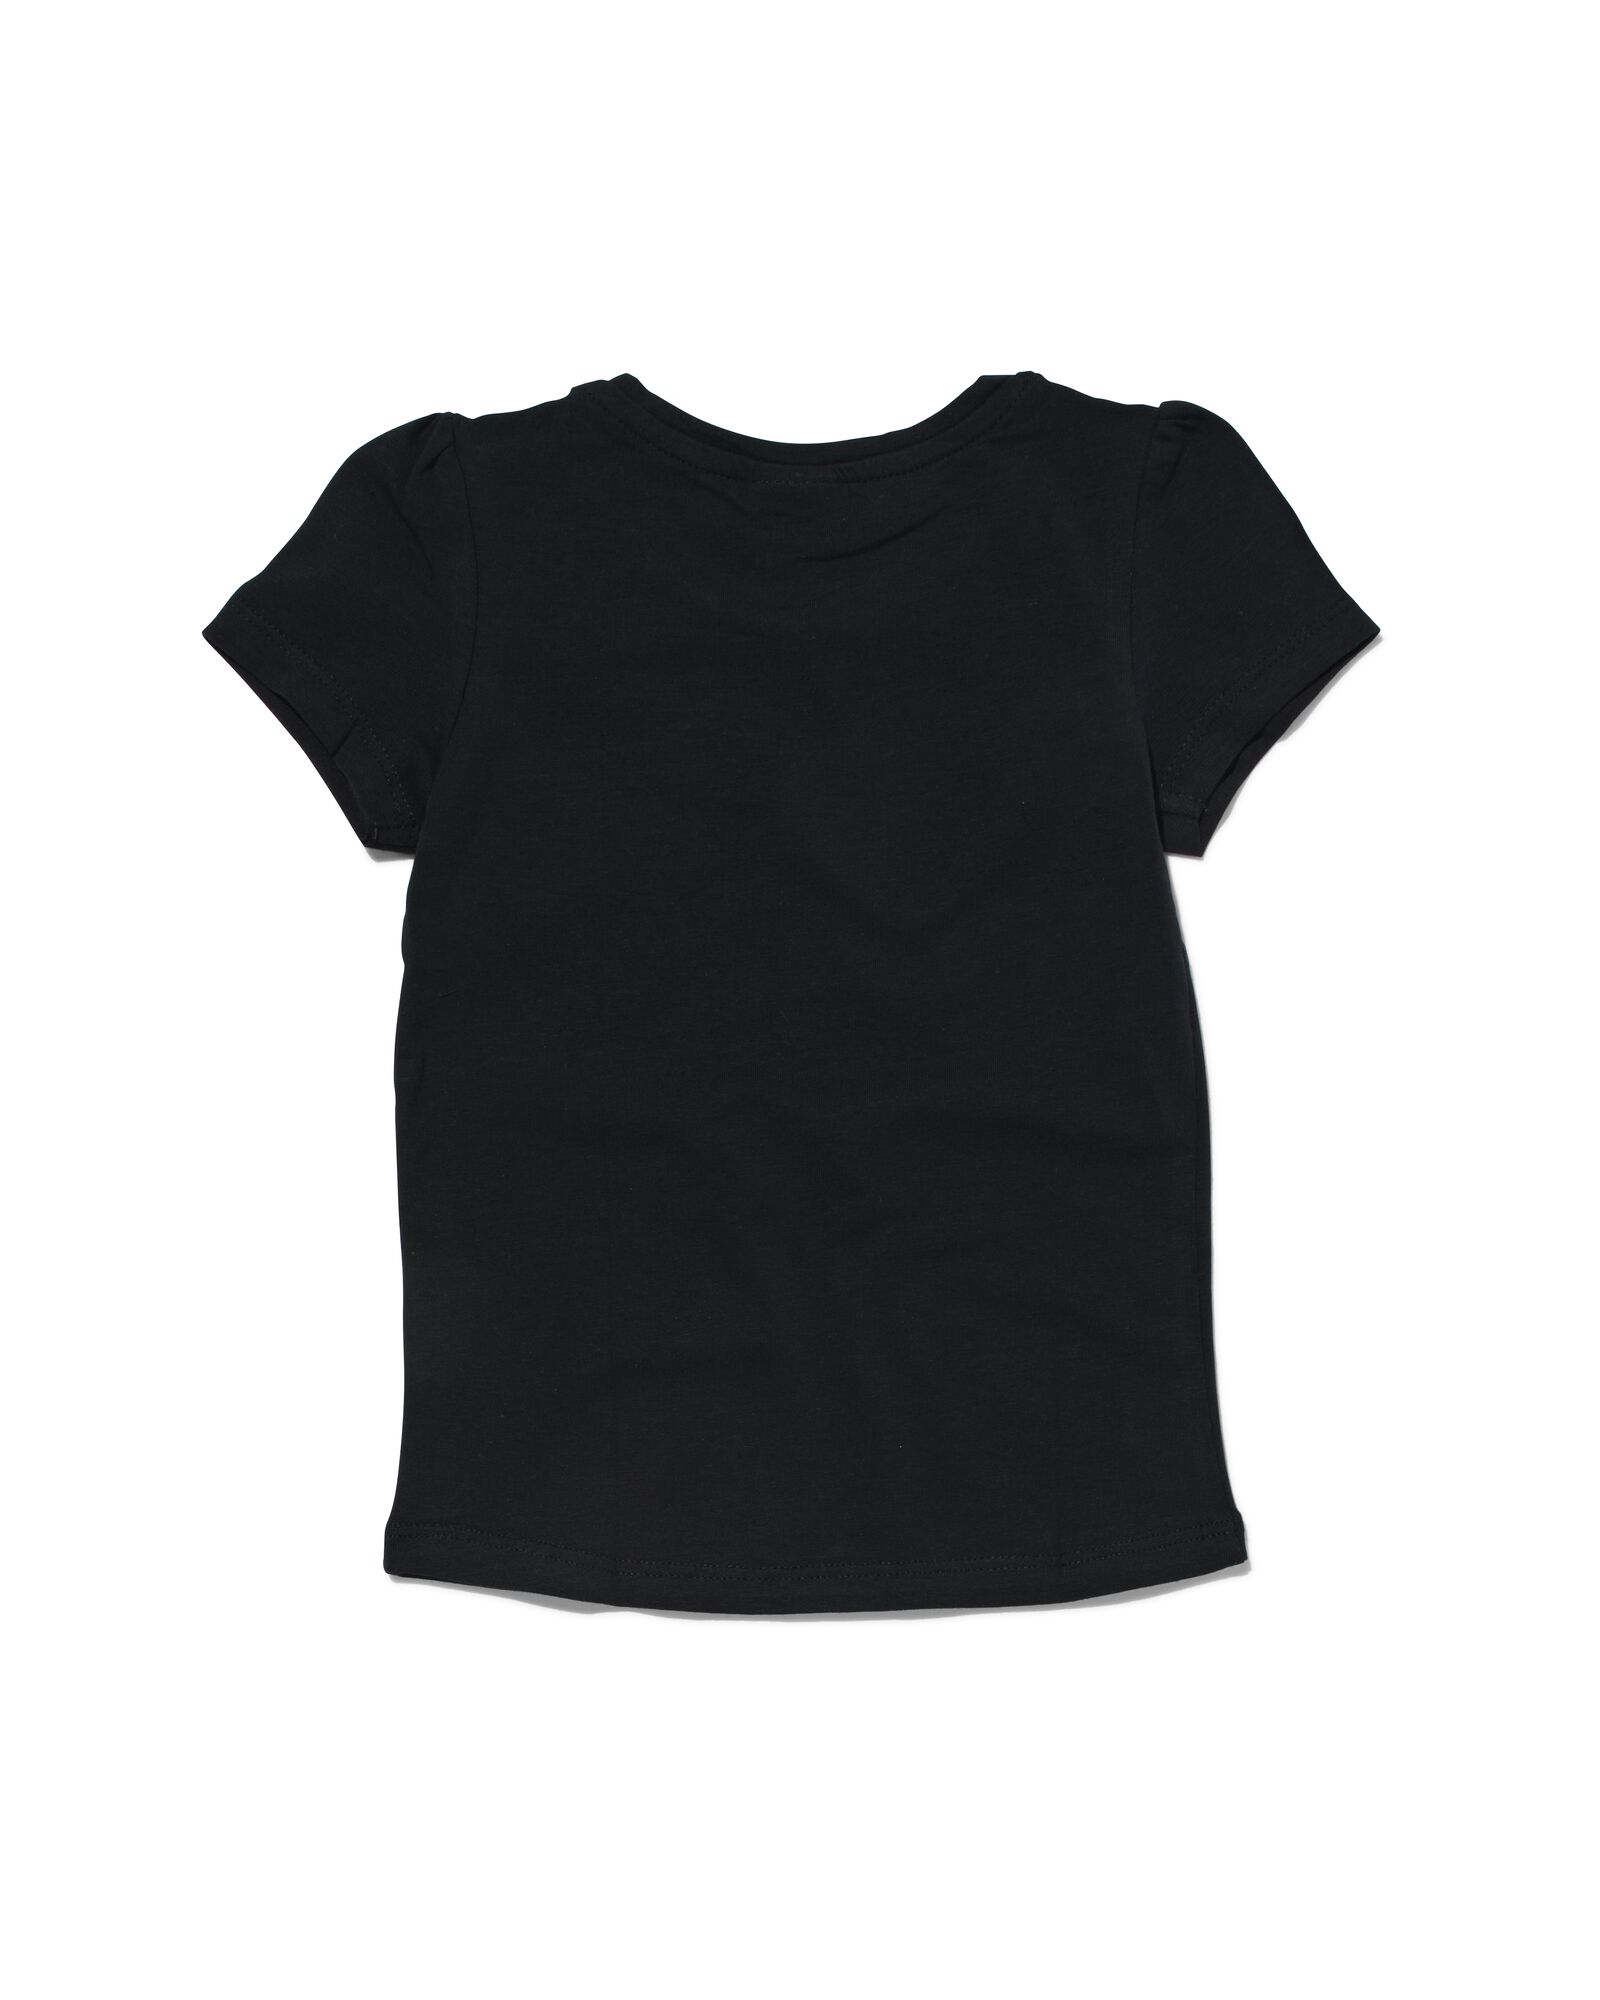 kinder t-shirt zwart 134/140 - 30843954 - HEMA